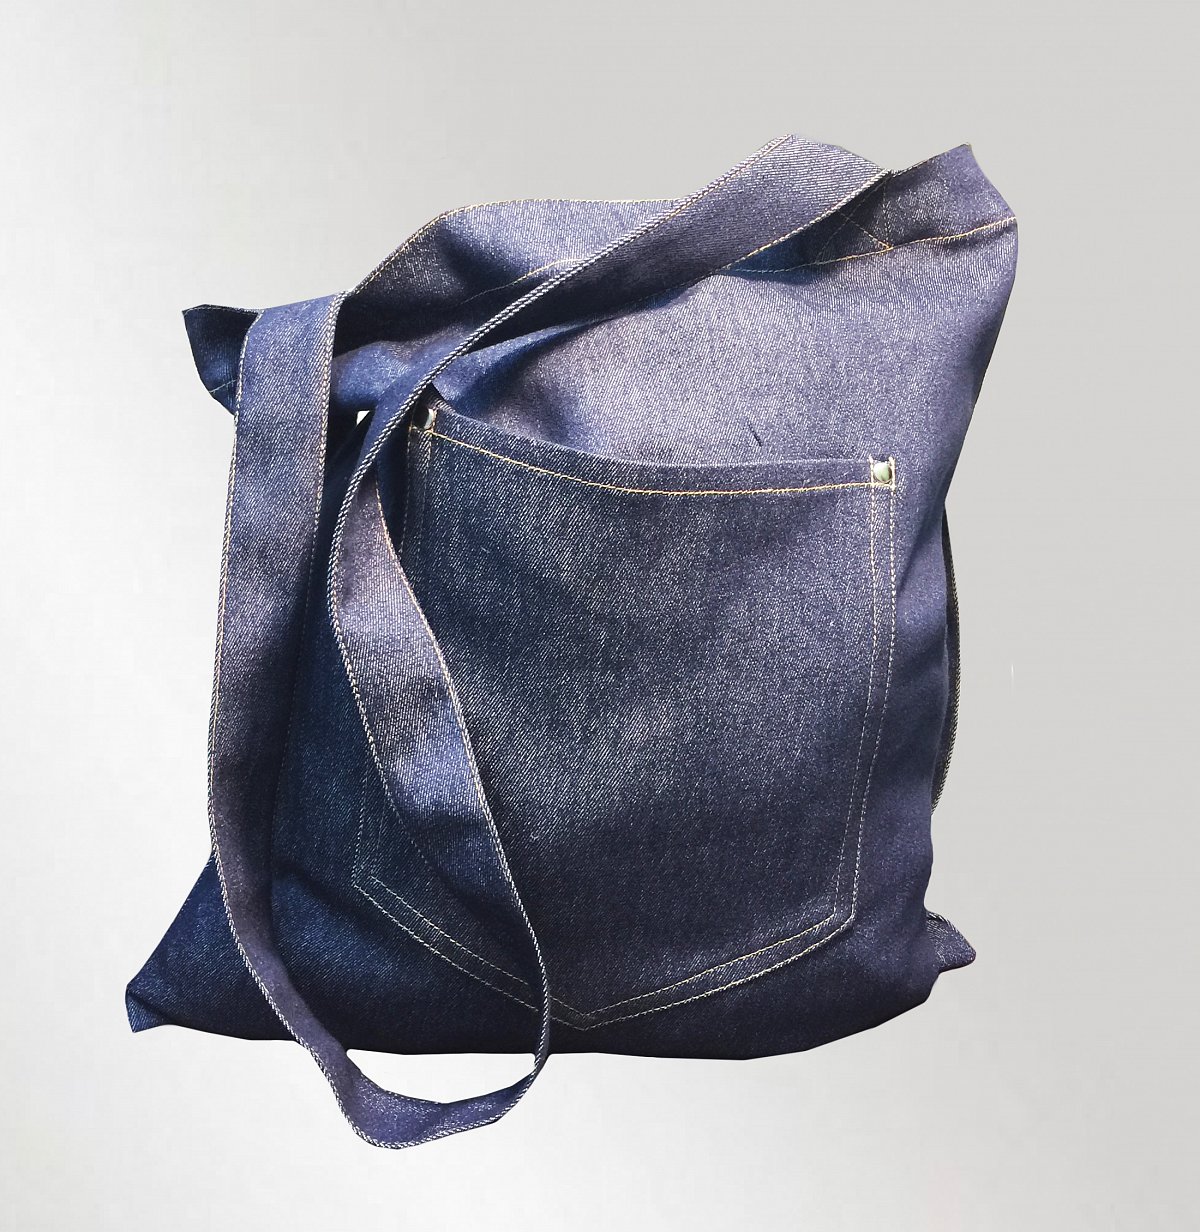 Пошив промо сумок - пример изделия: Джинсовая промо сумка